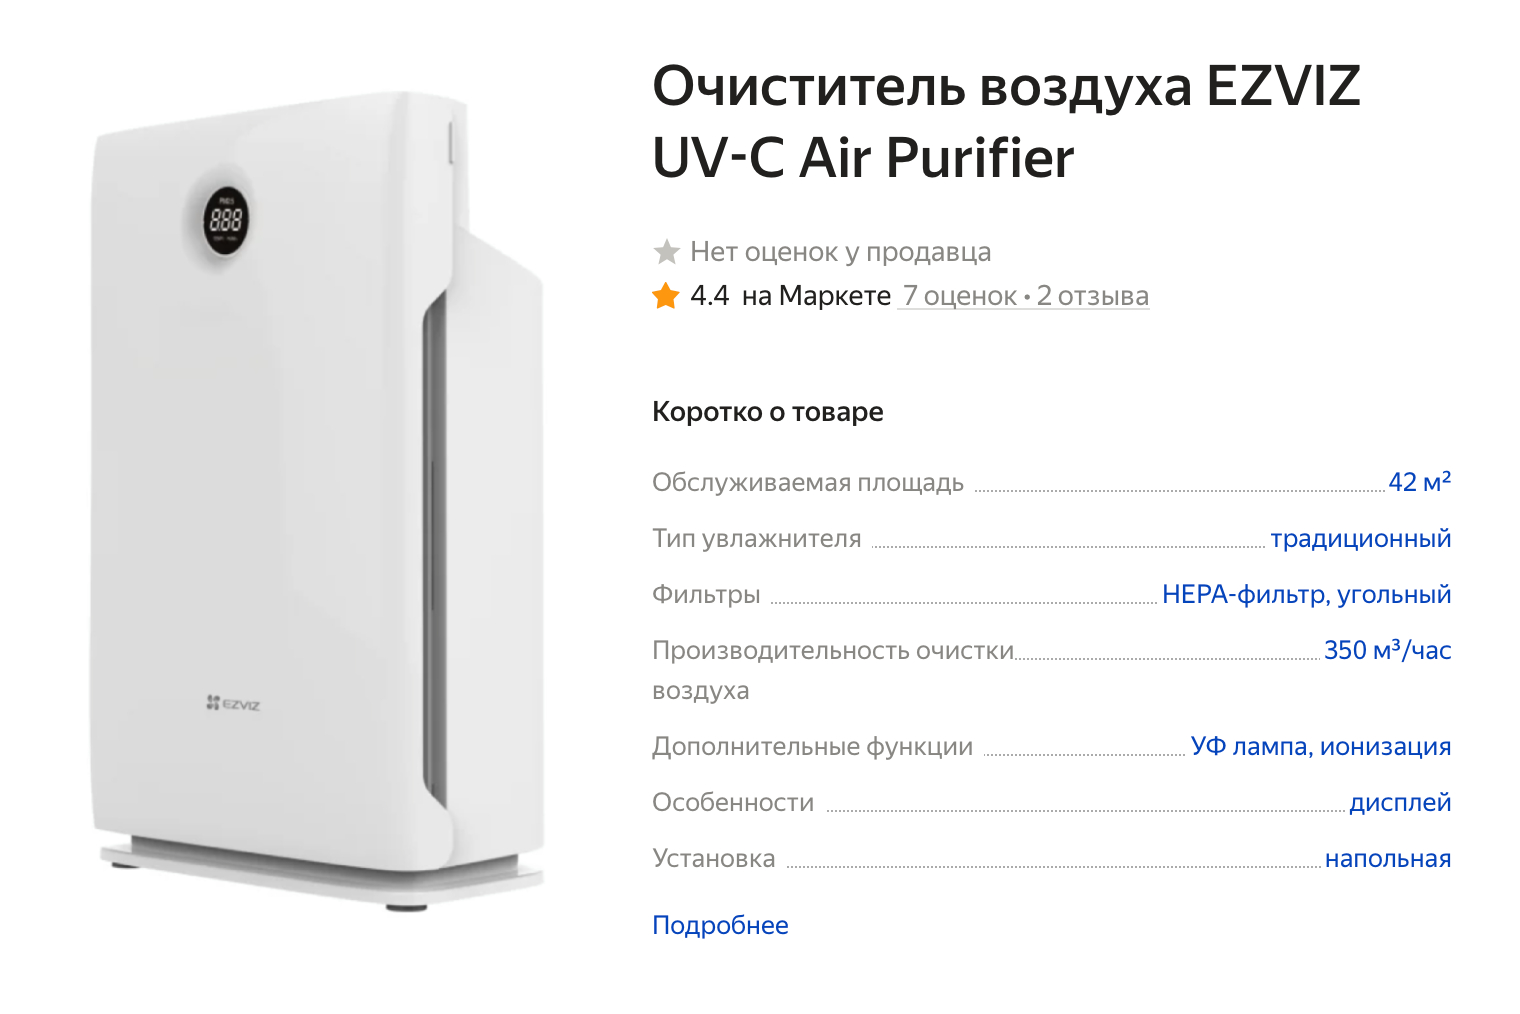 Бюджетная модель с минимальным набором фильтров для очистки воздуха. Источник: market.yandex.ru